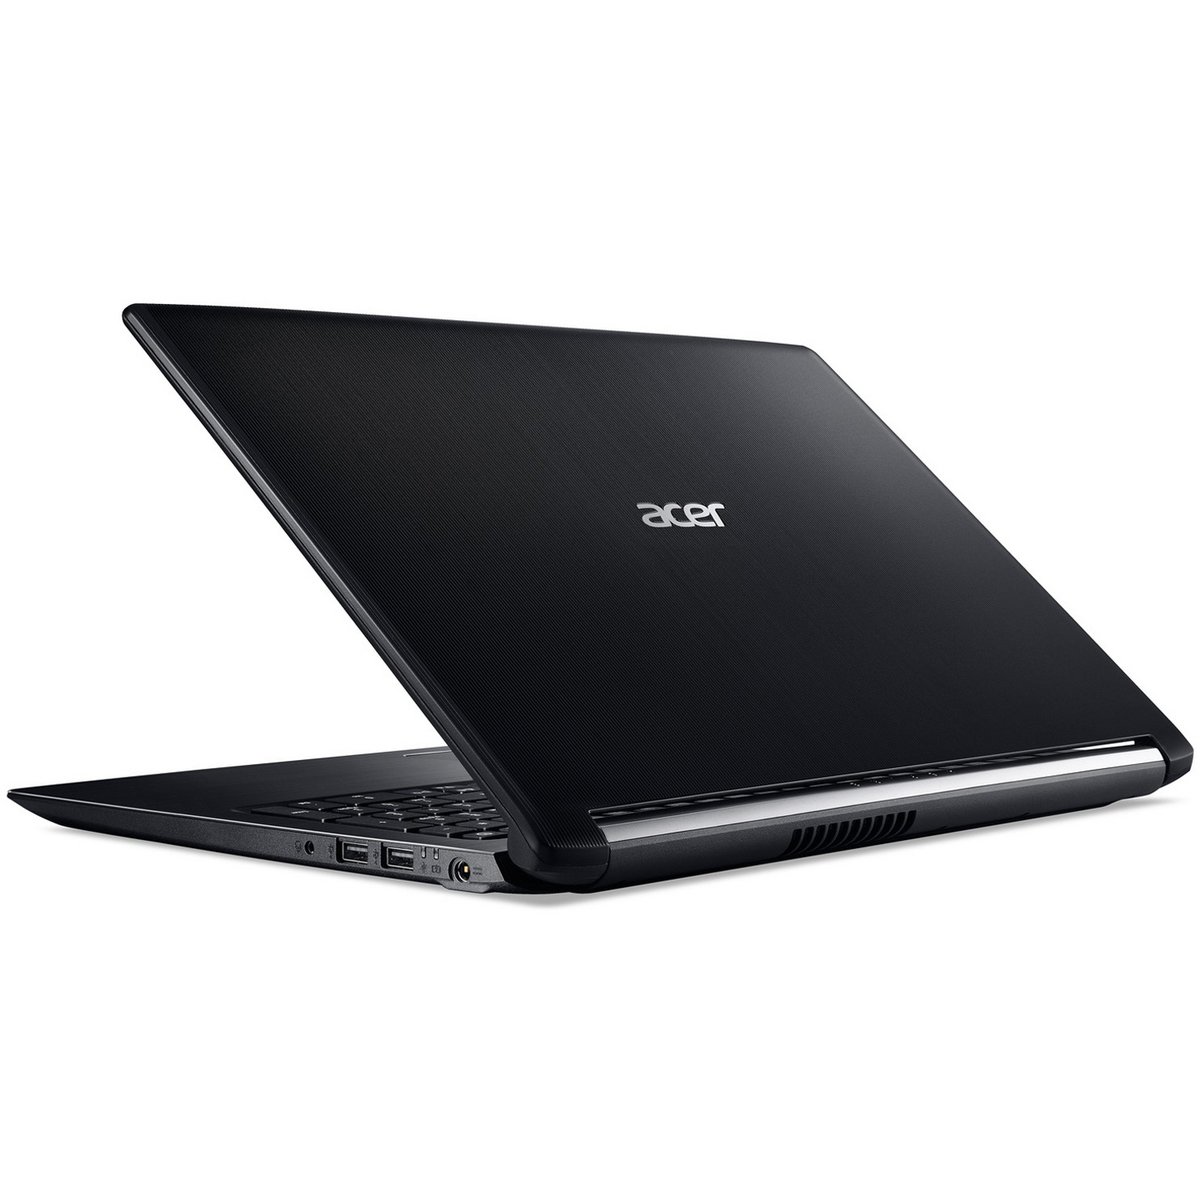 Acer Notebook A515-NXGP5EM004 Core i5 Black